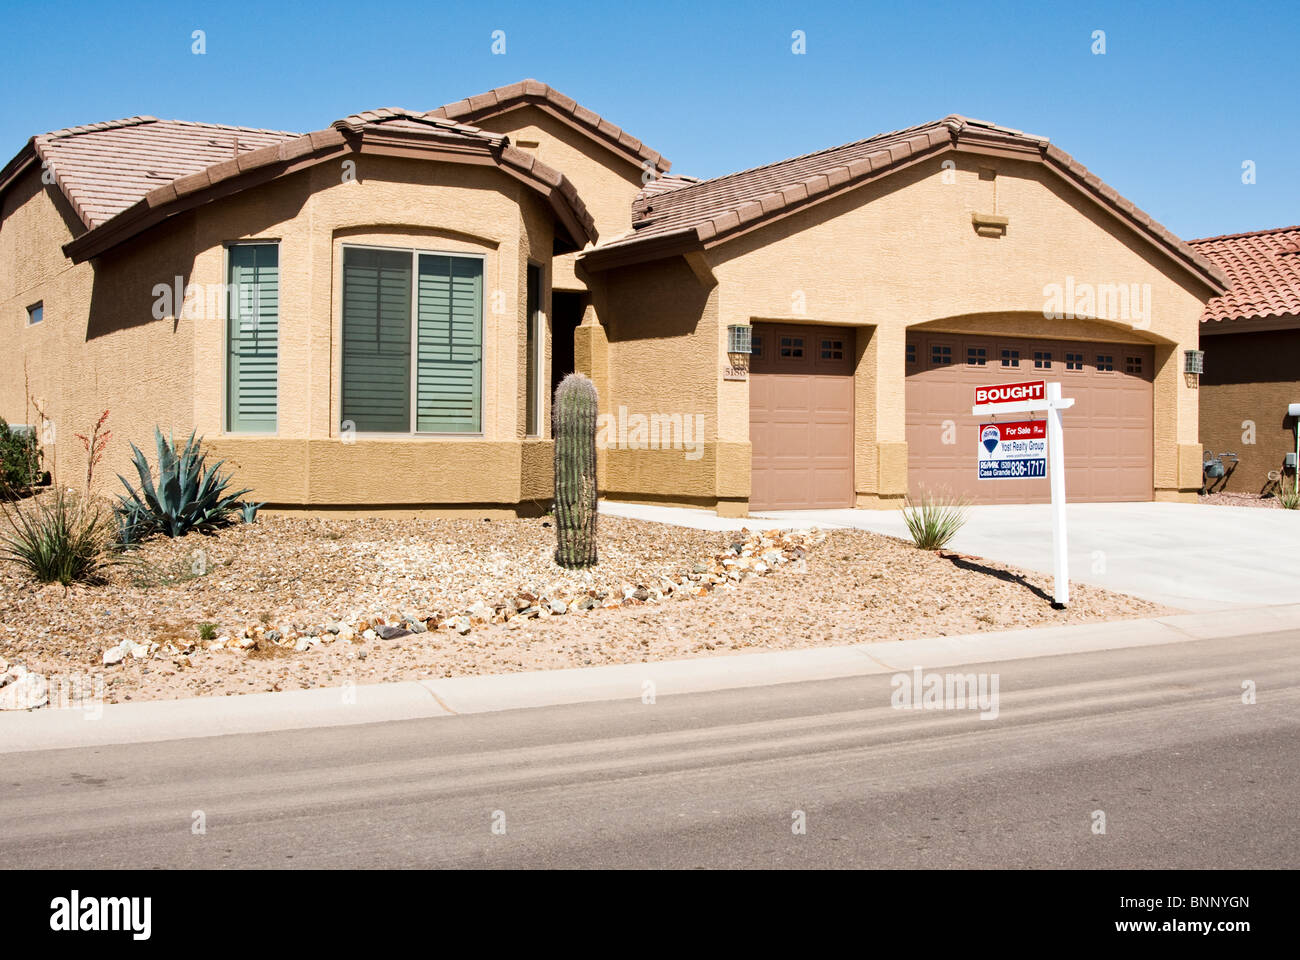 Die Immobilien-Zeichen vor diesem Haus zeigt an, dass das Haus gekauft wurde. Stockfoto